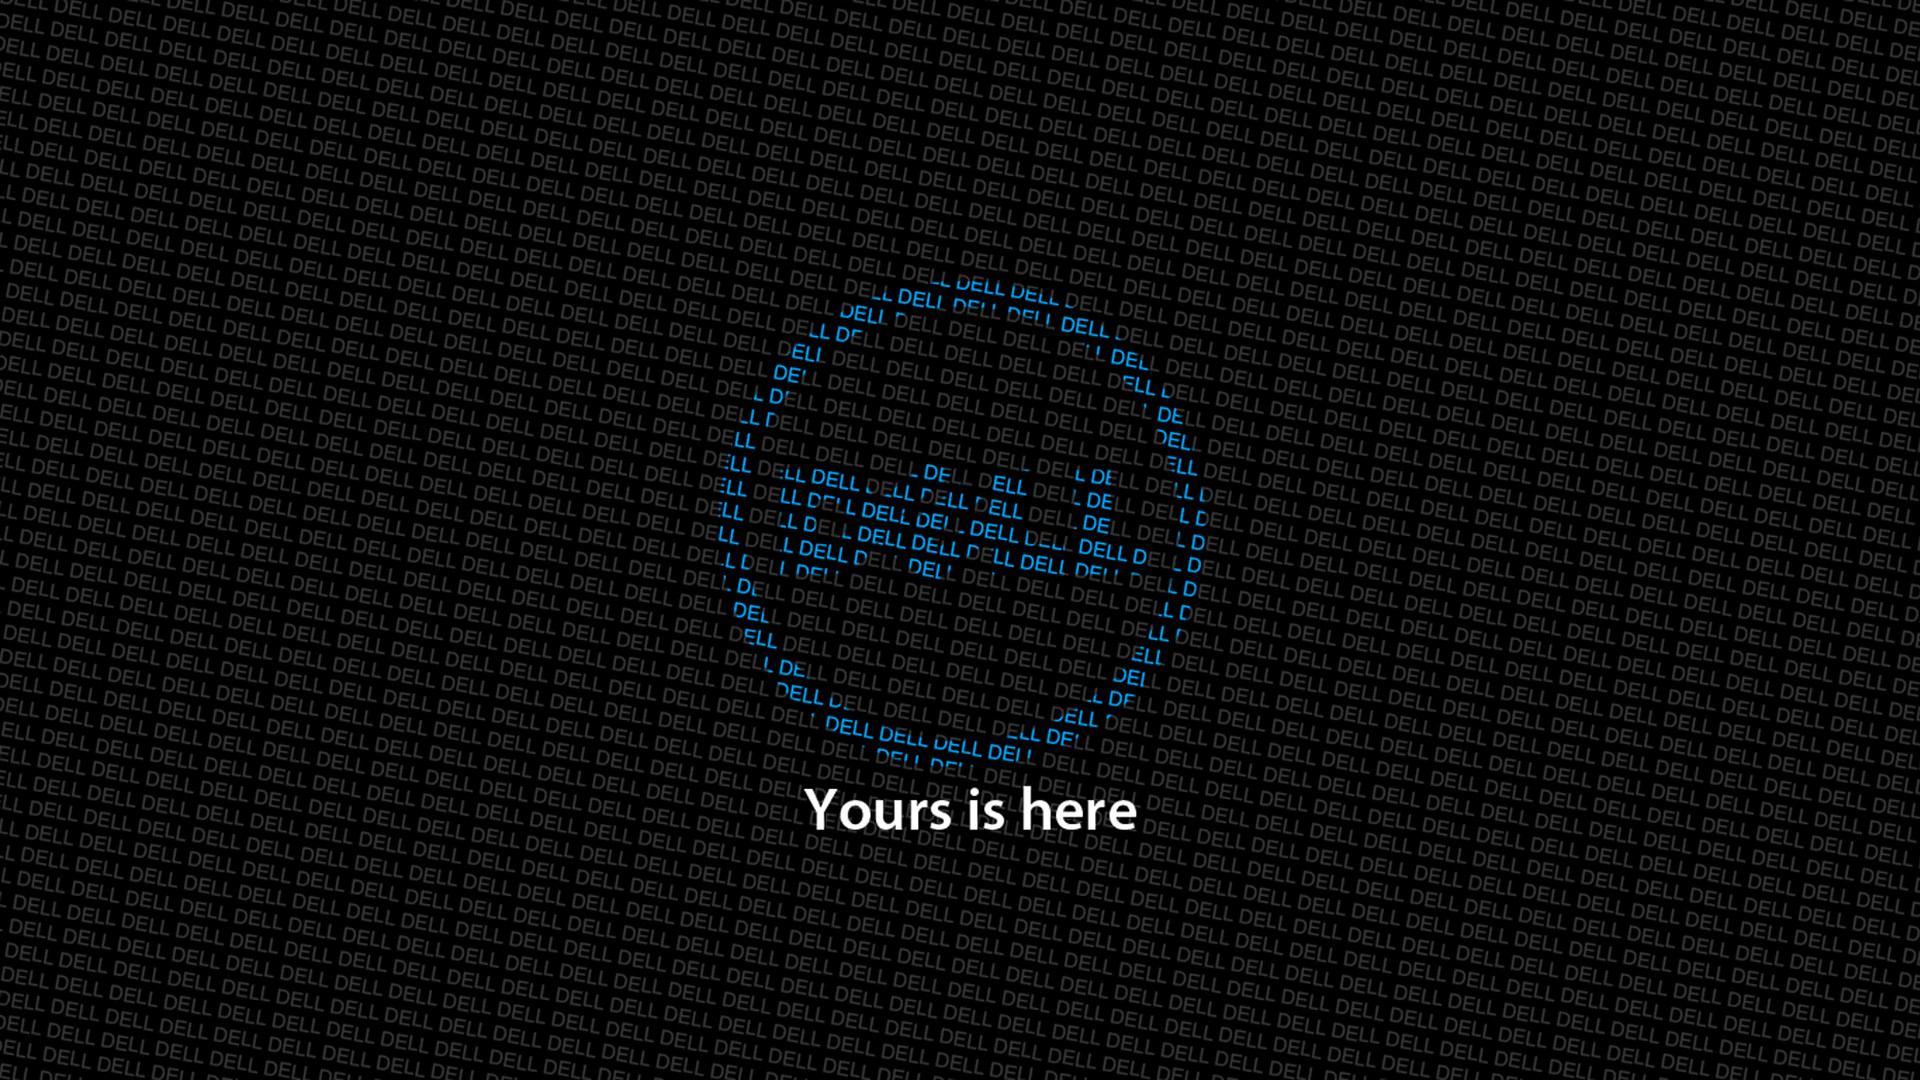 Dell HD Wallpaper 1920x1080 (71+ images)